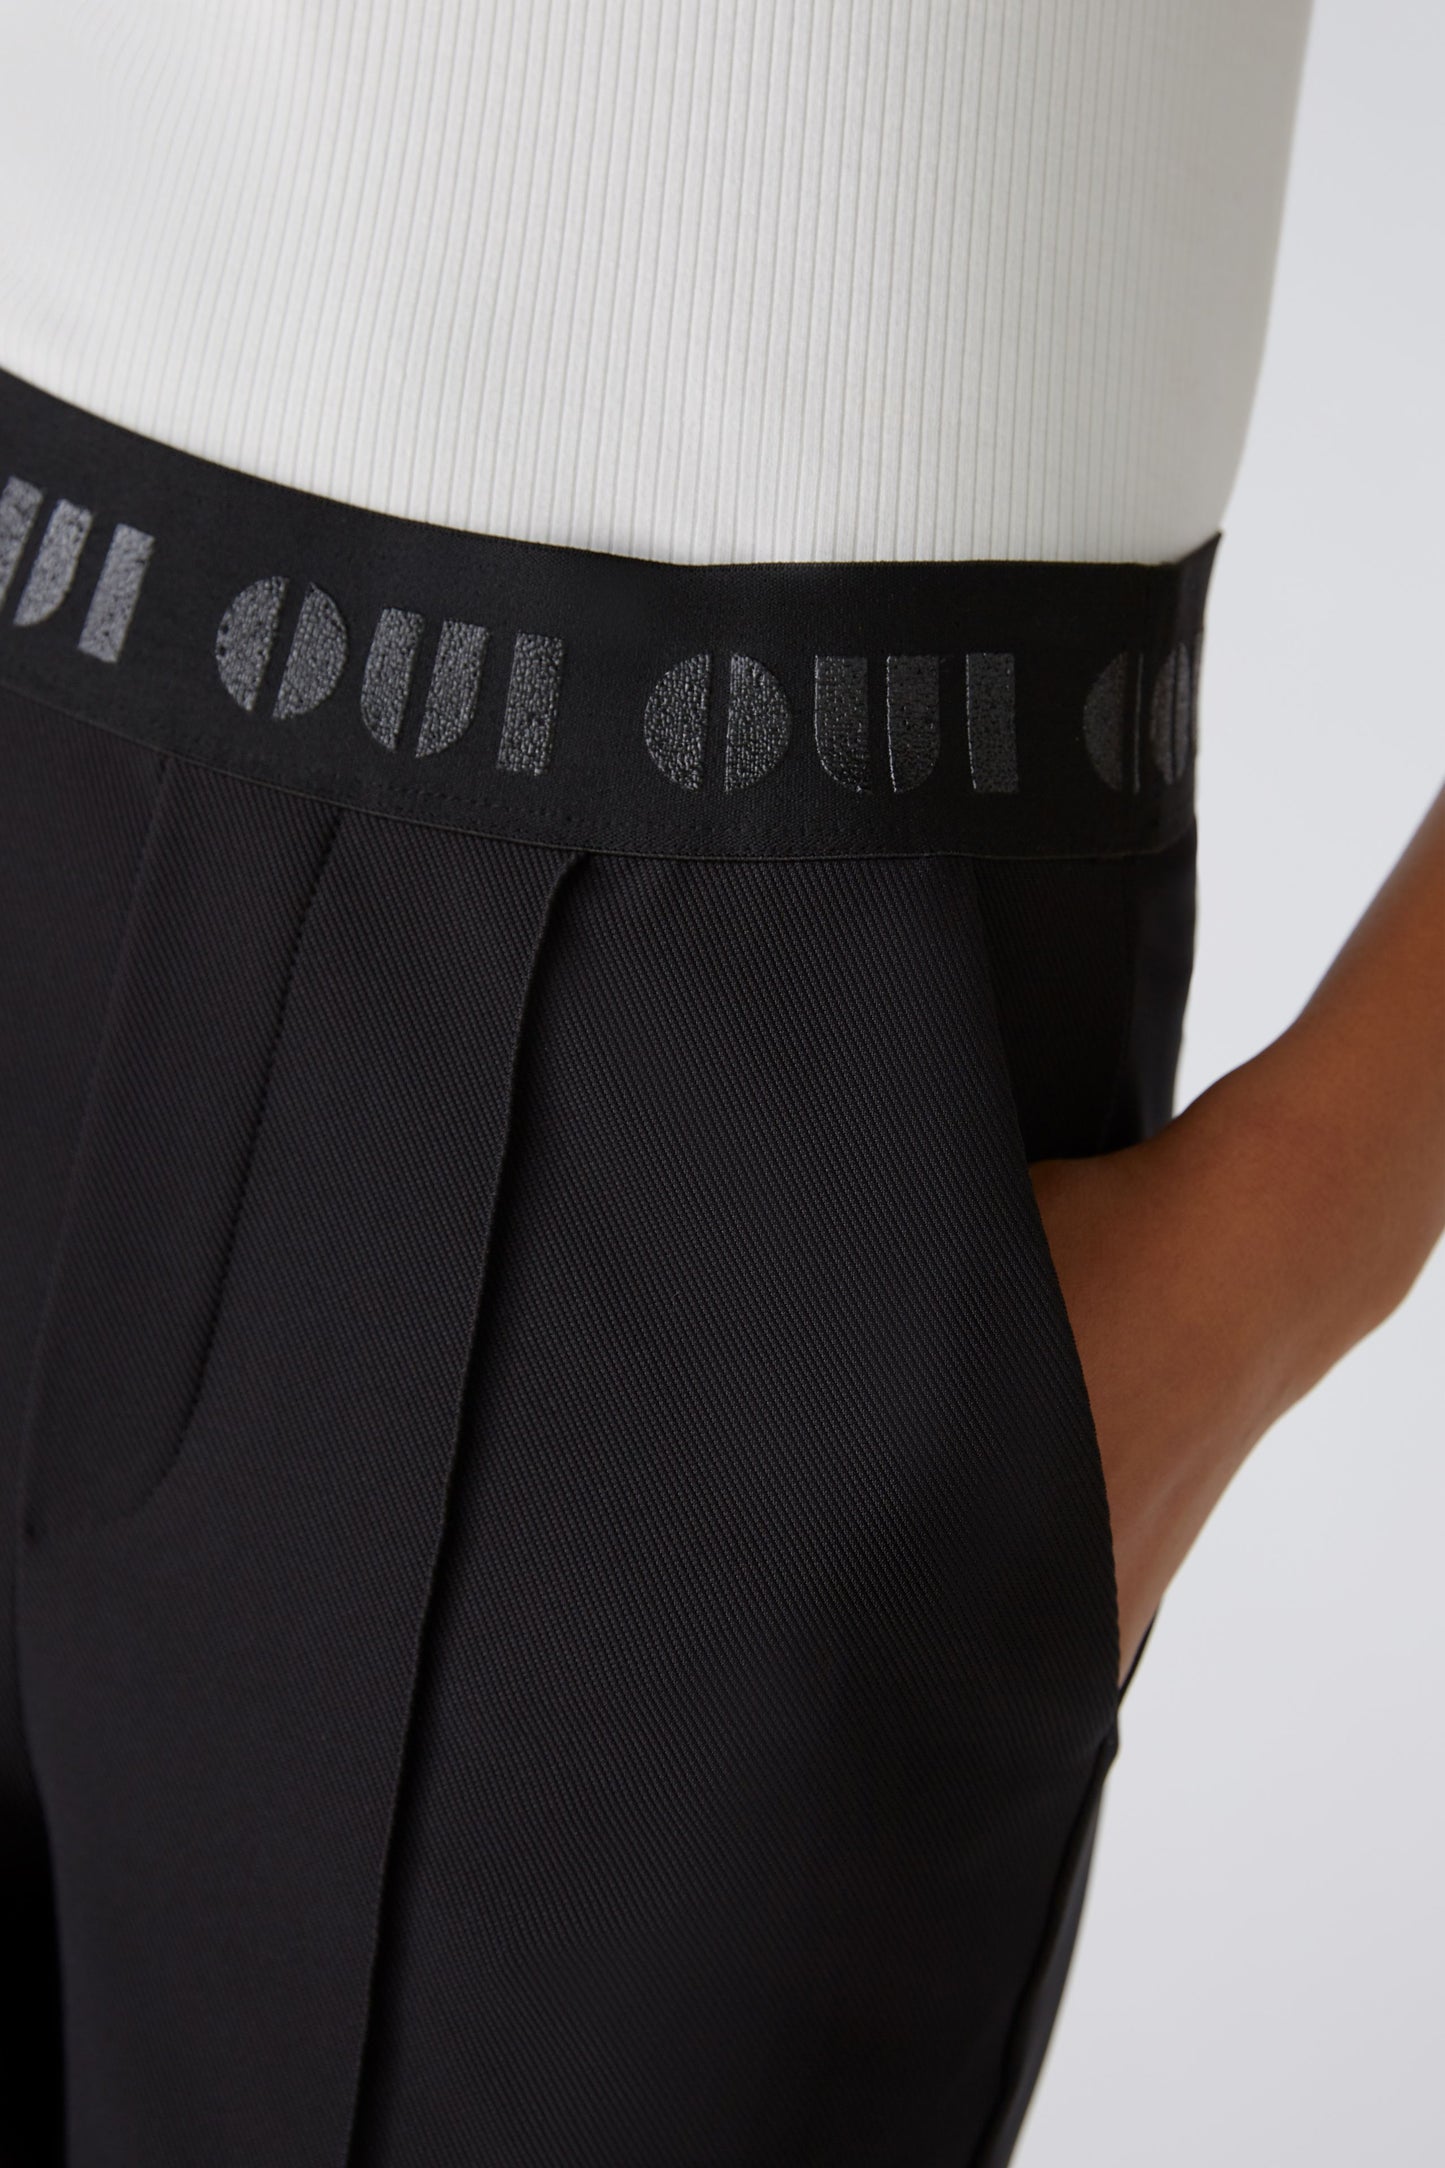 Oui Black Trousers /"OUI" Elasticated Waistband